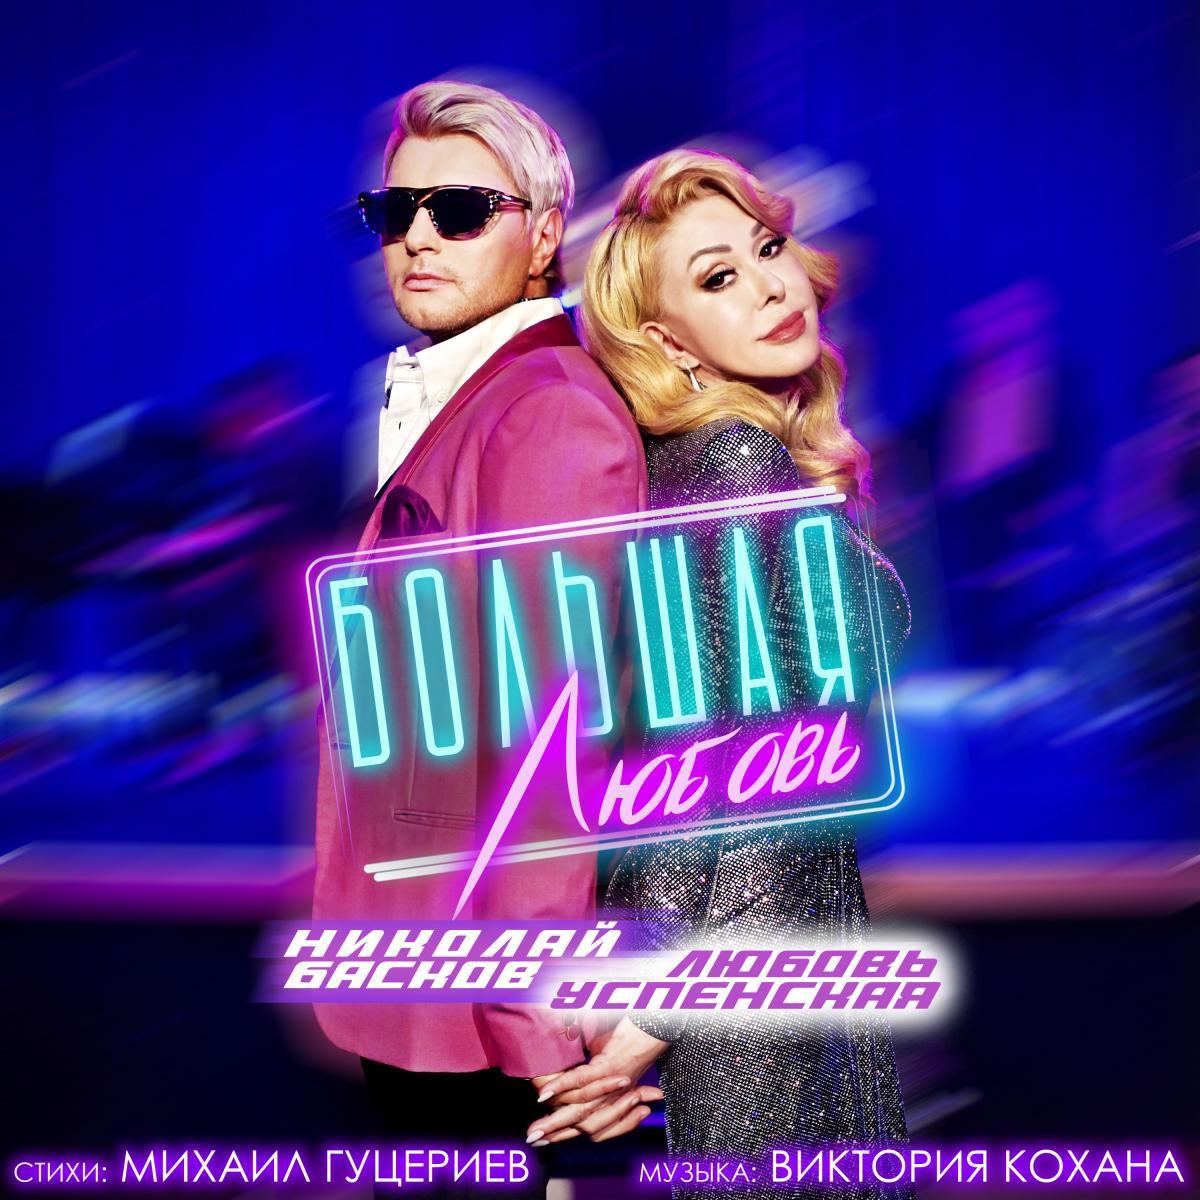 Николай Басков и Любовь Успенская официально представили песню-признание «Большая любовь» 